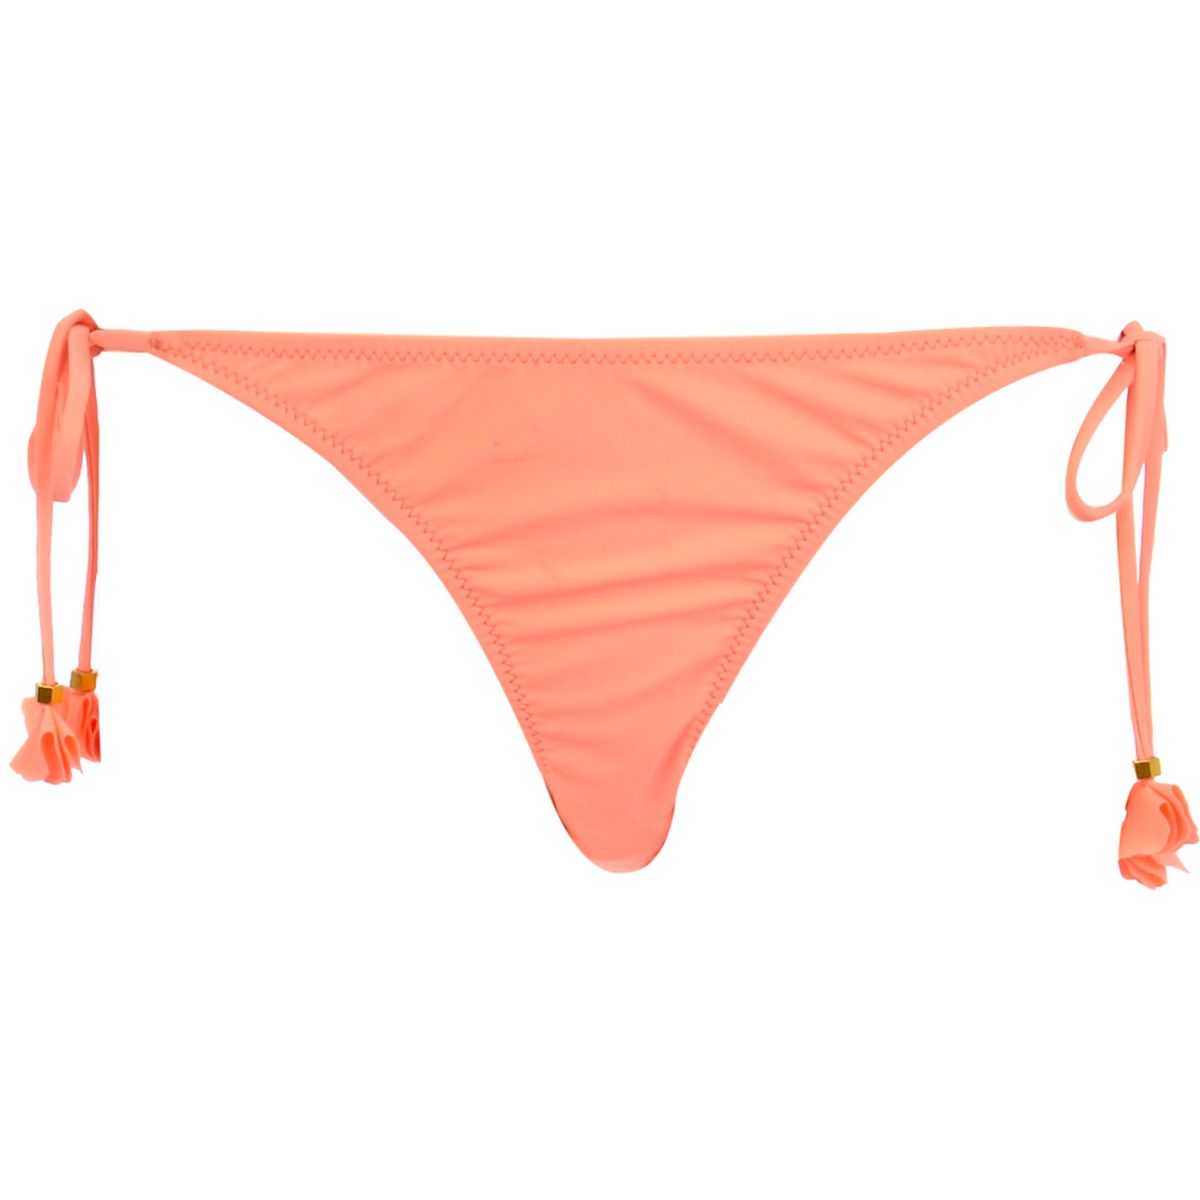 Orange flower tie side bikini bottoms - Bikinis - Sale - women